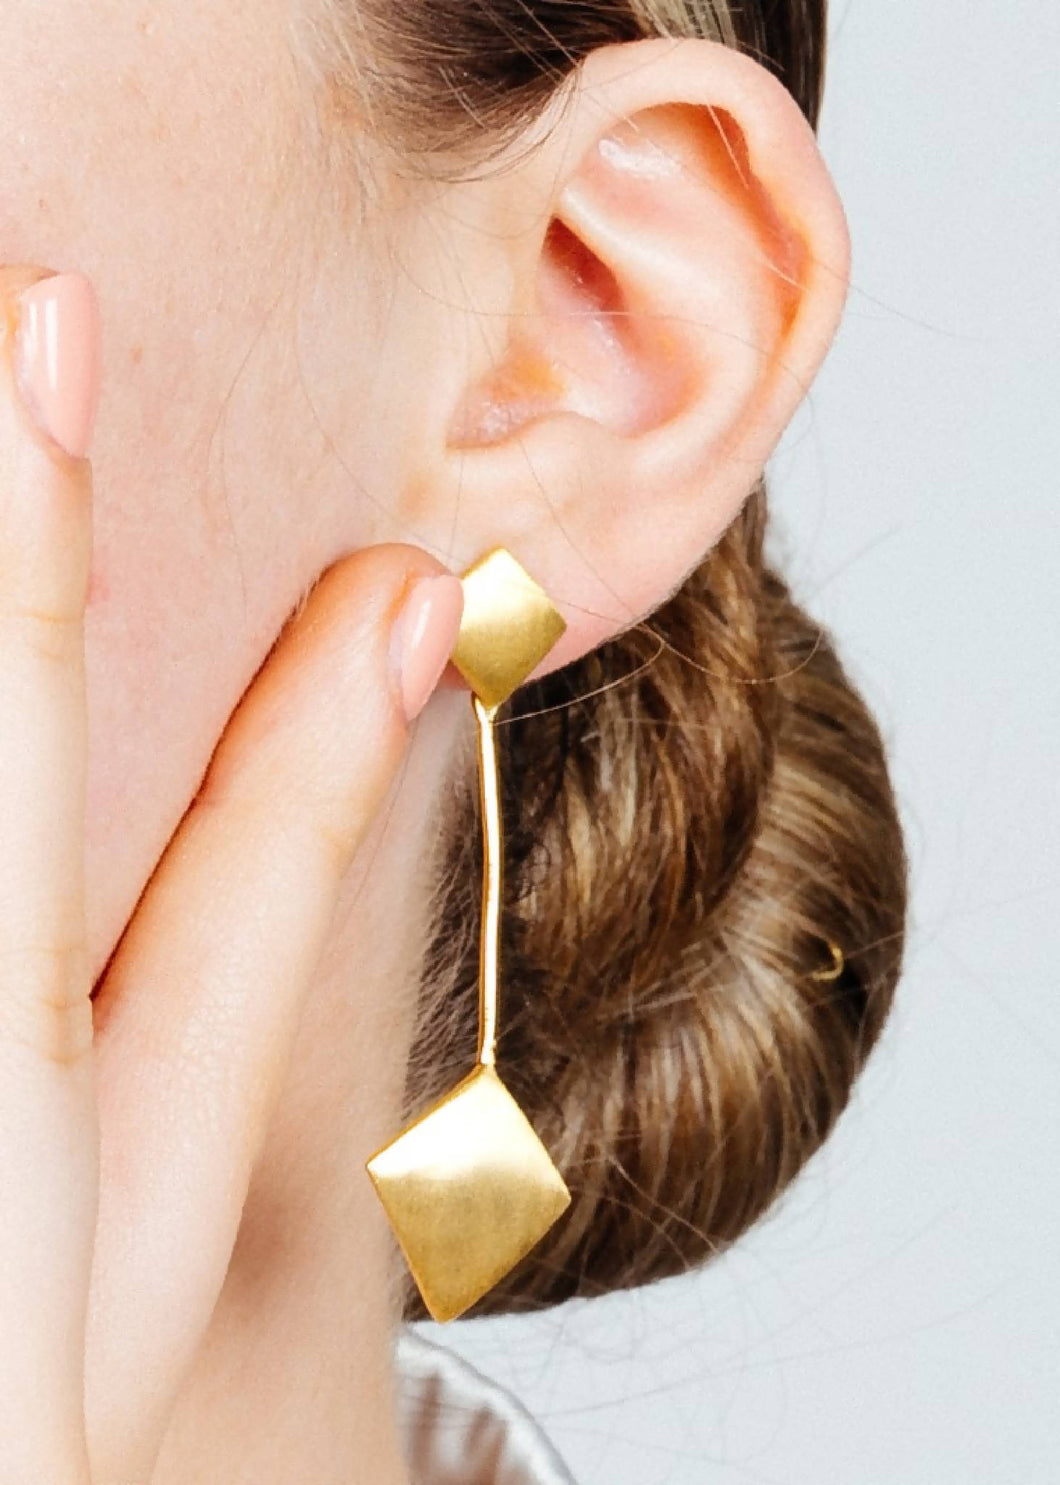 Art Deco Earrings